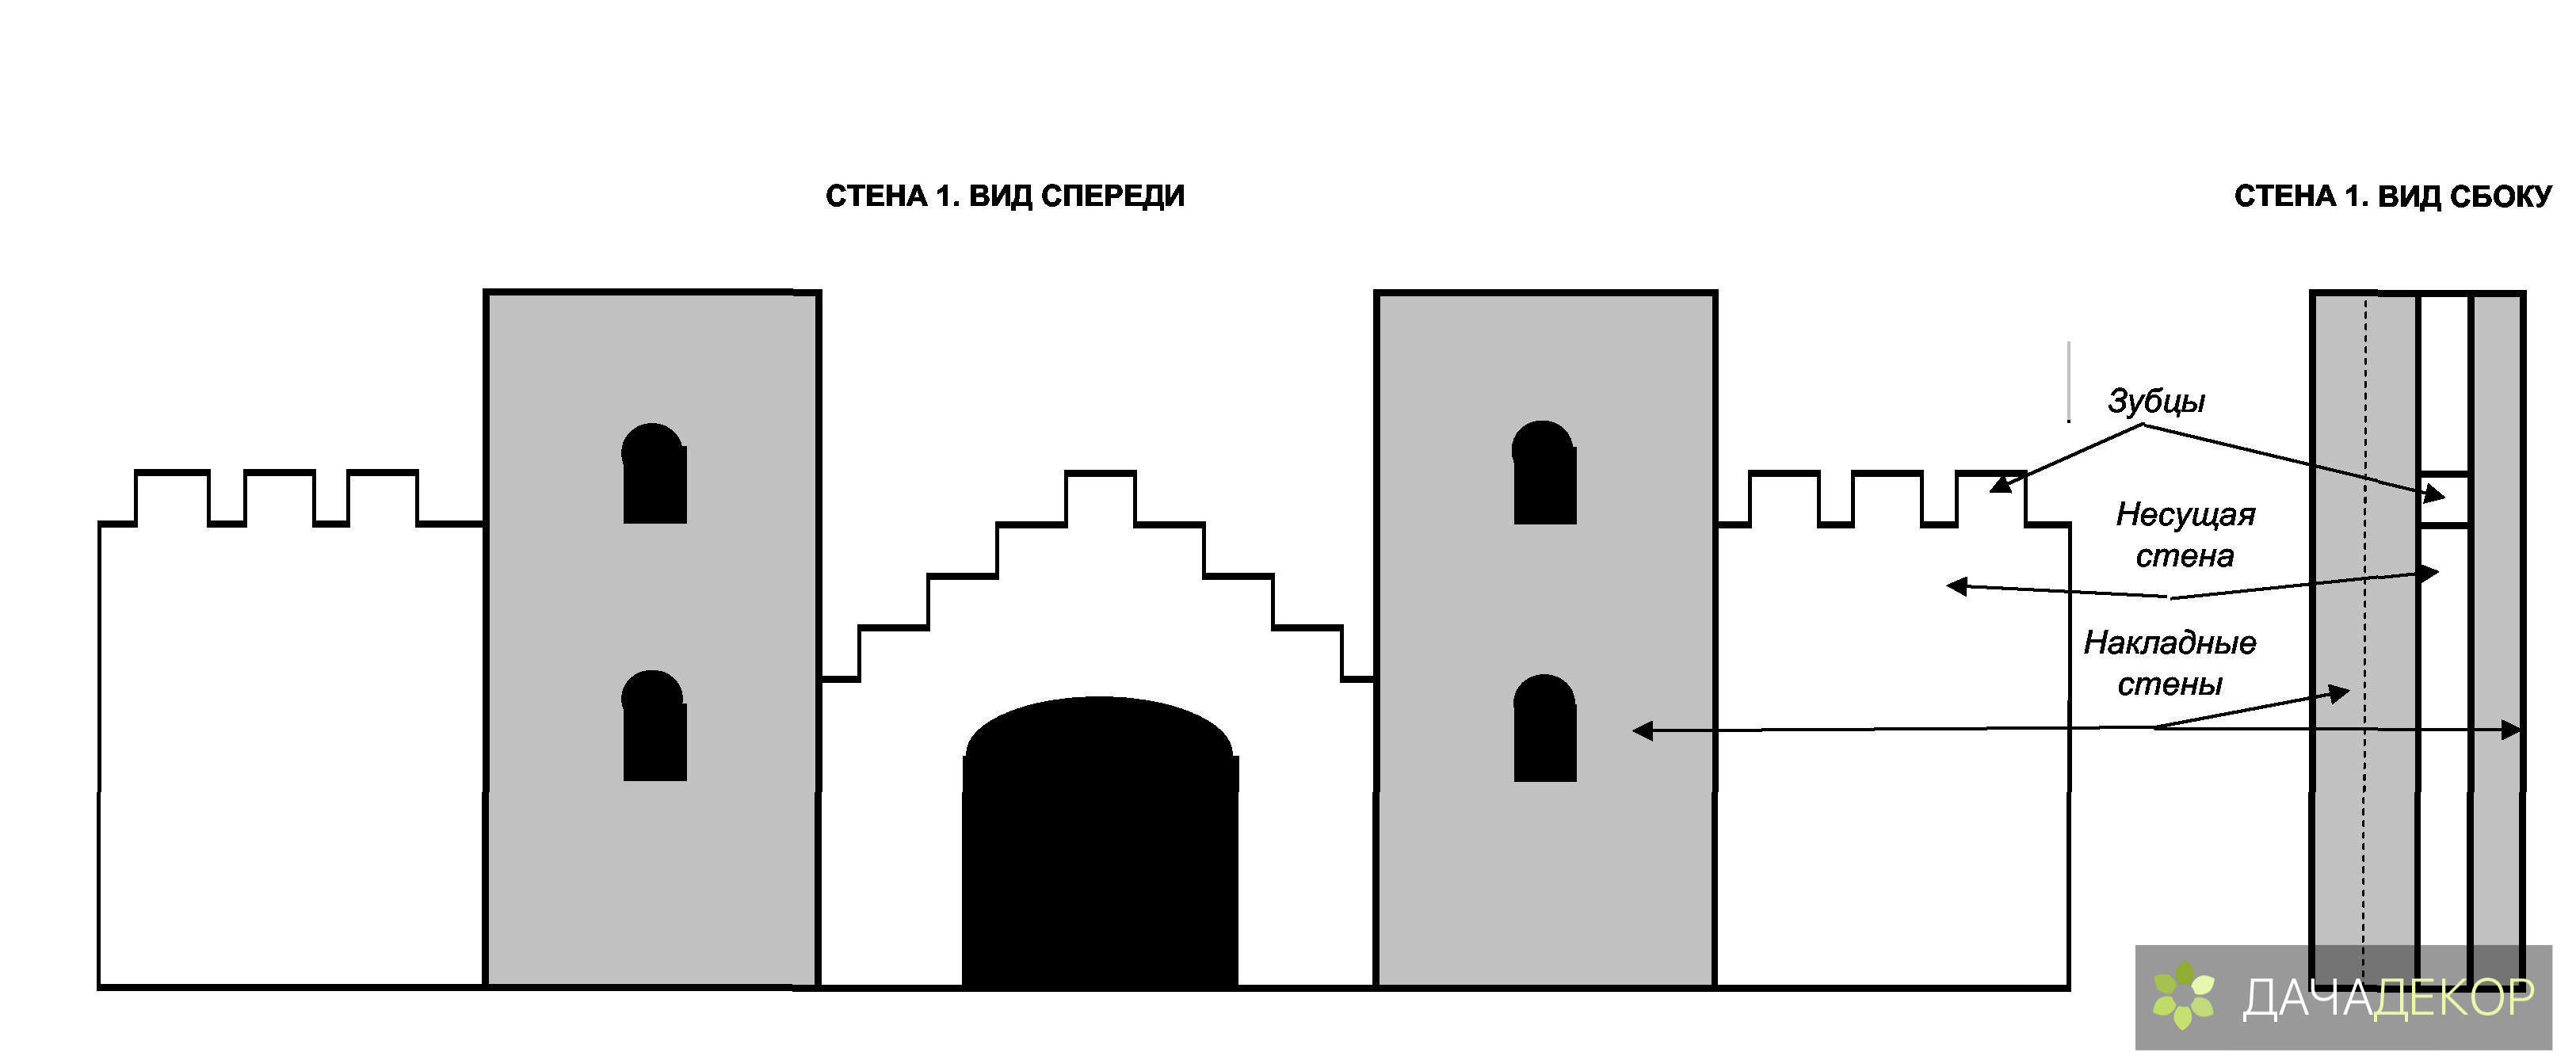 Как сделать макет средневекового замка на участке своими руками